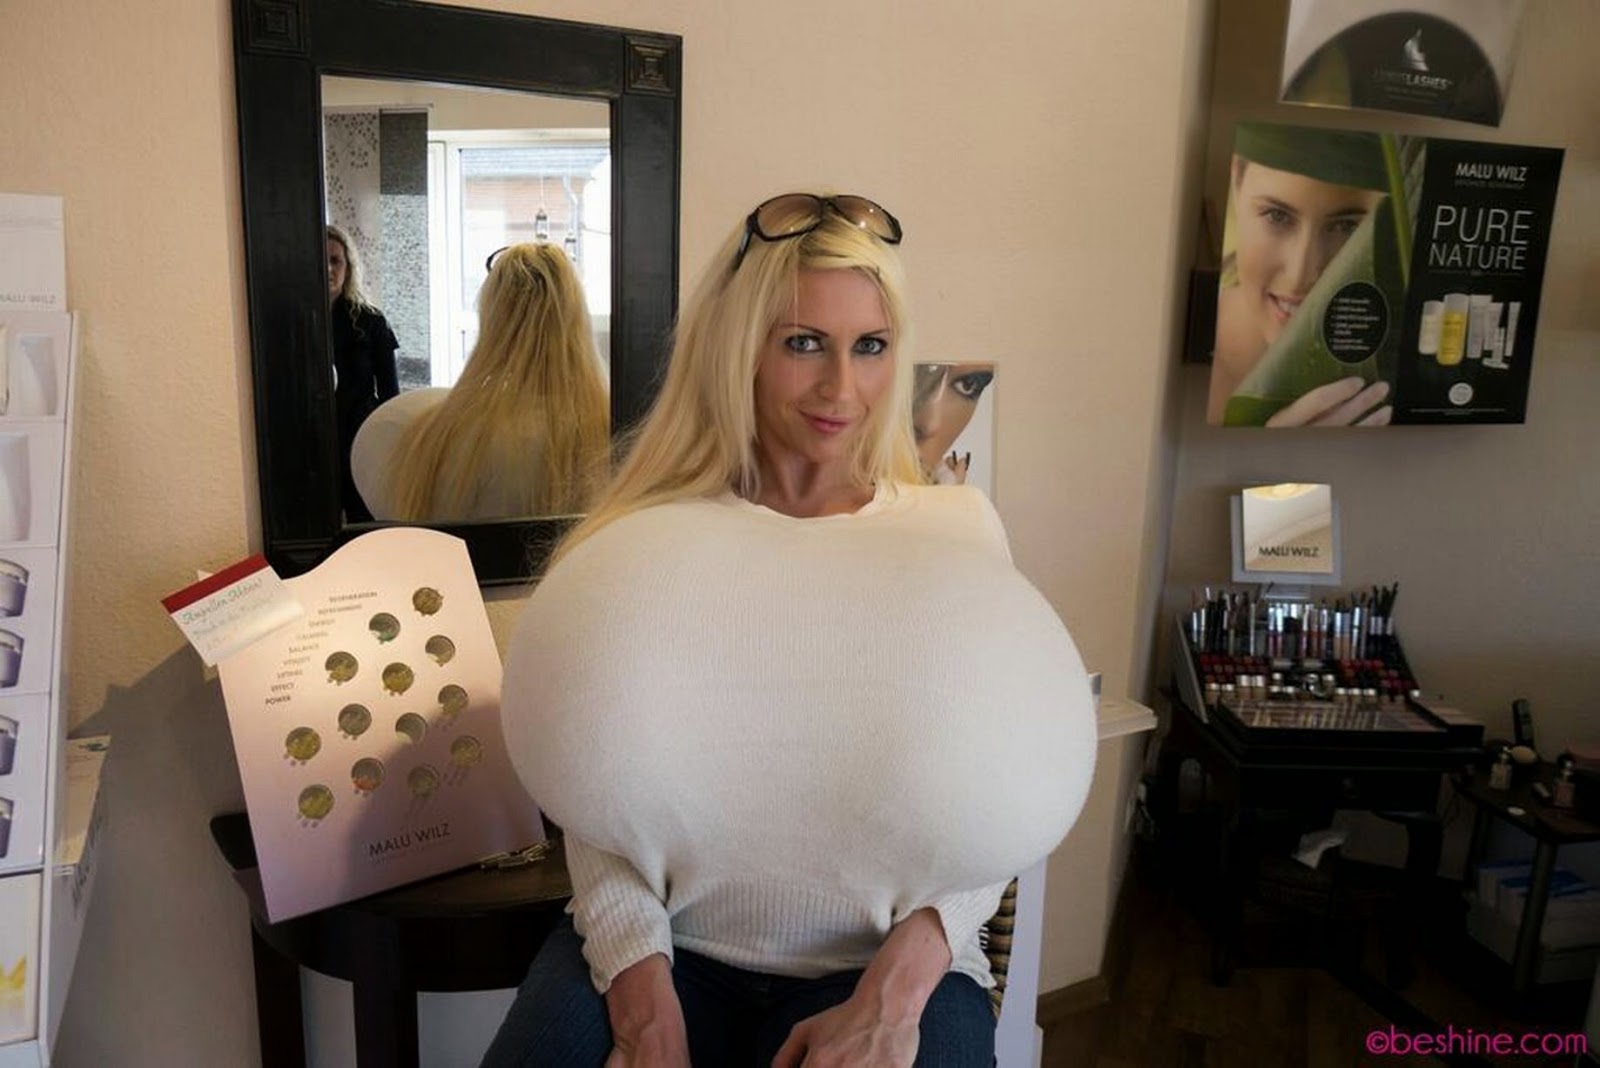 World biggest bra size